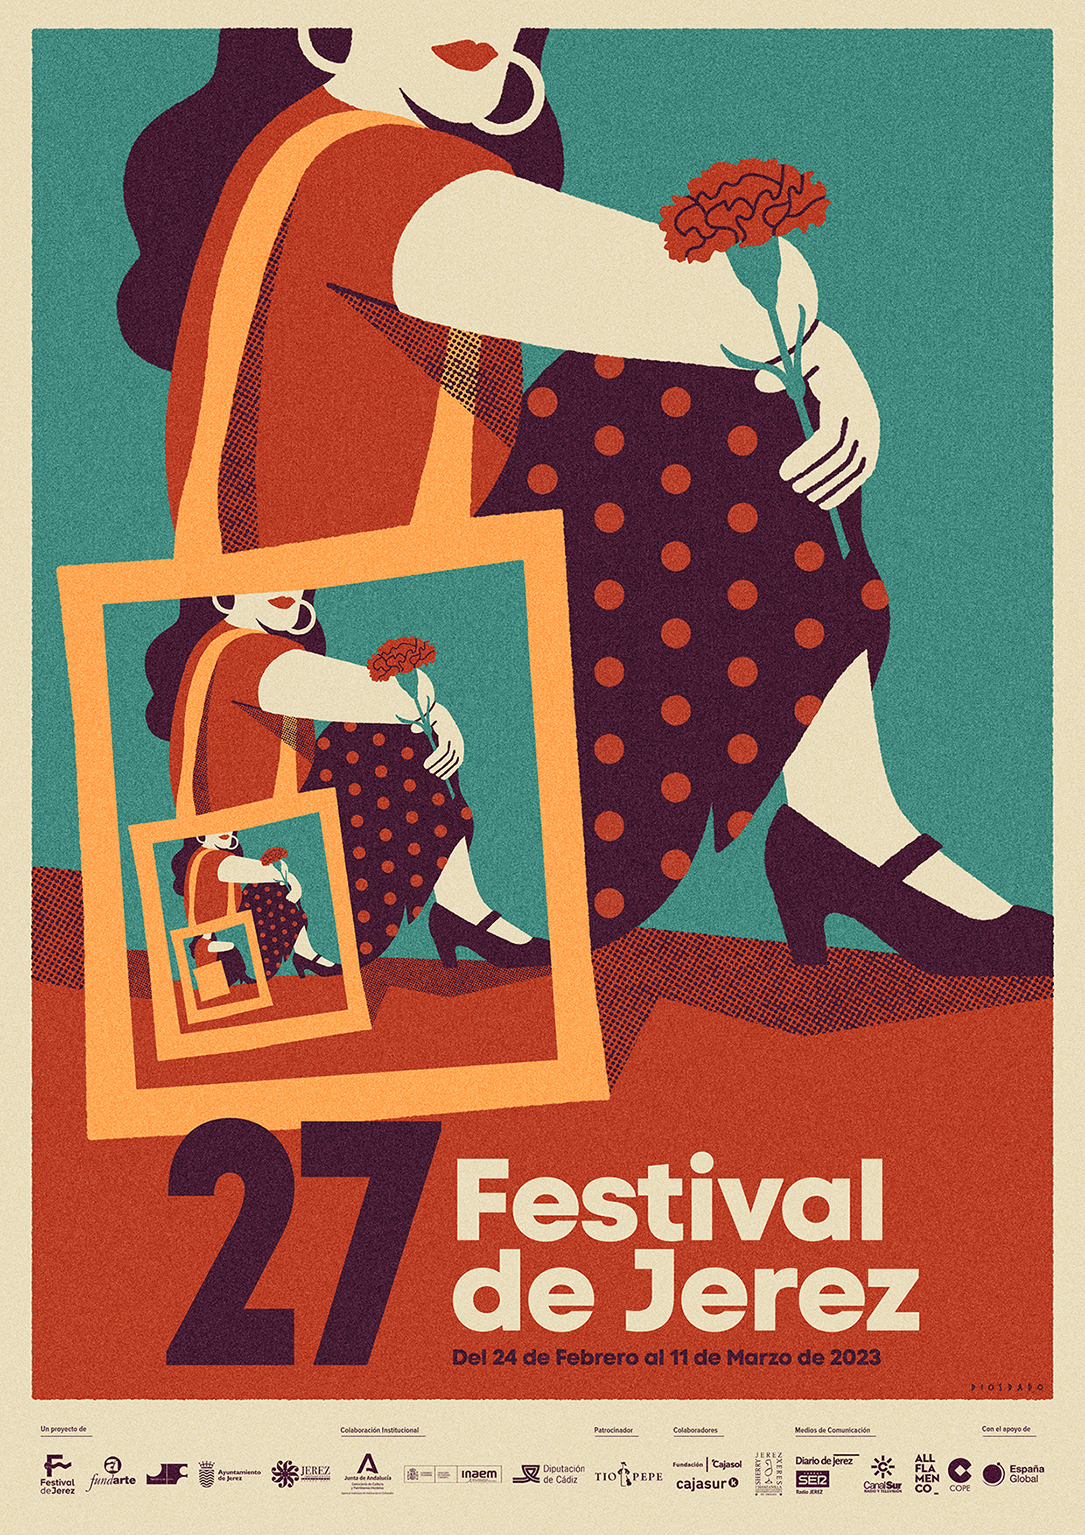 Festival de Jerez 2022